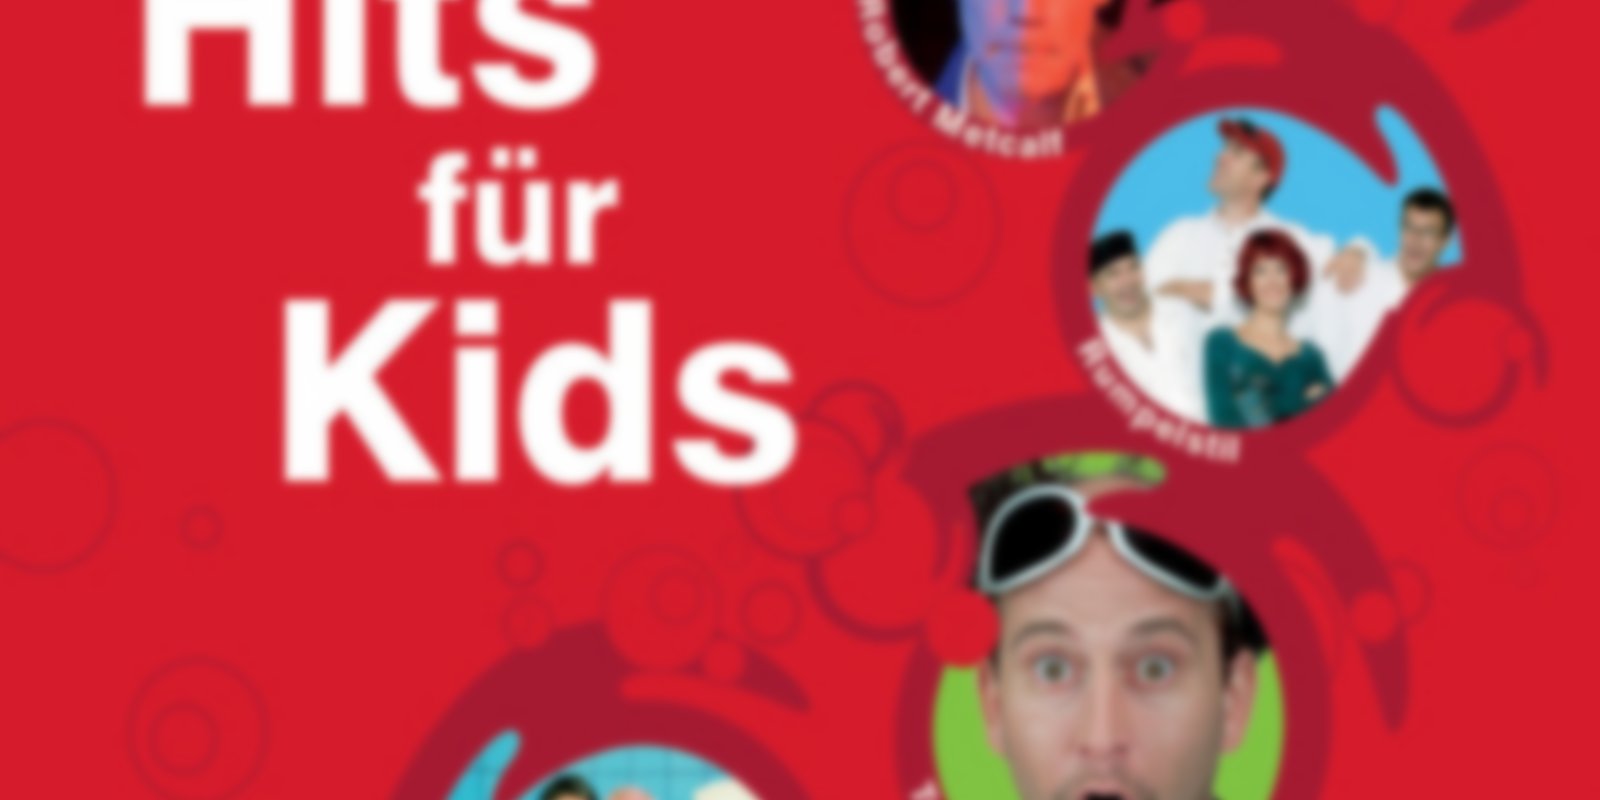 Tivi - Hits für Kids